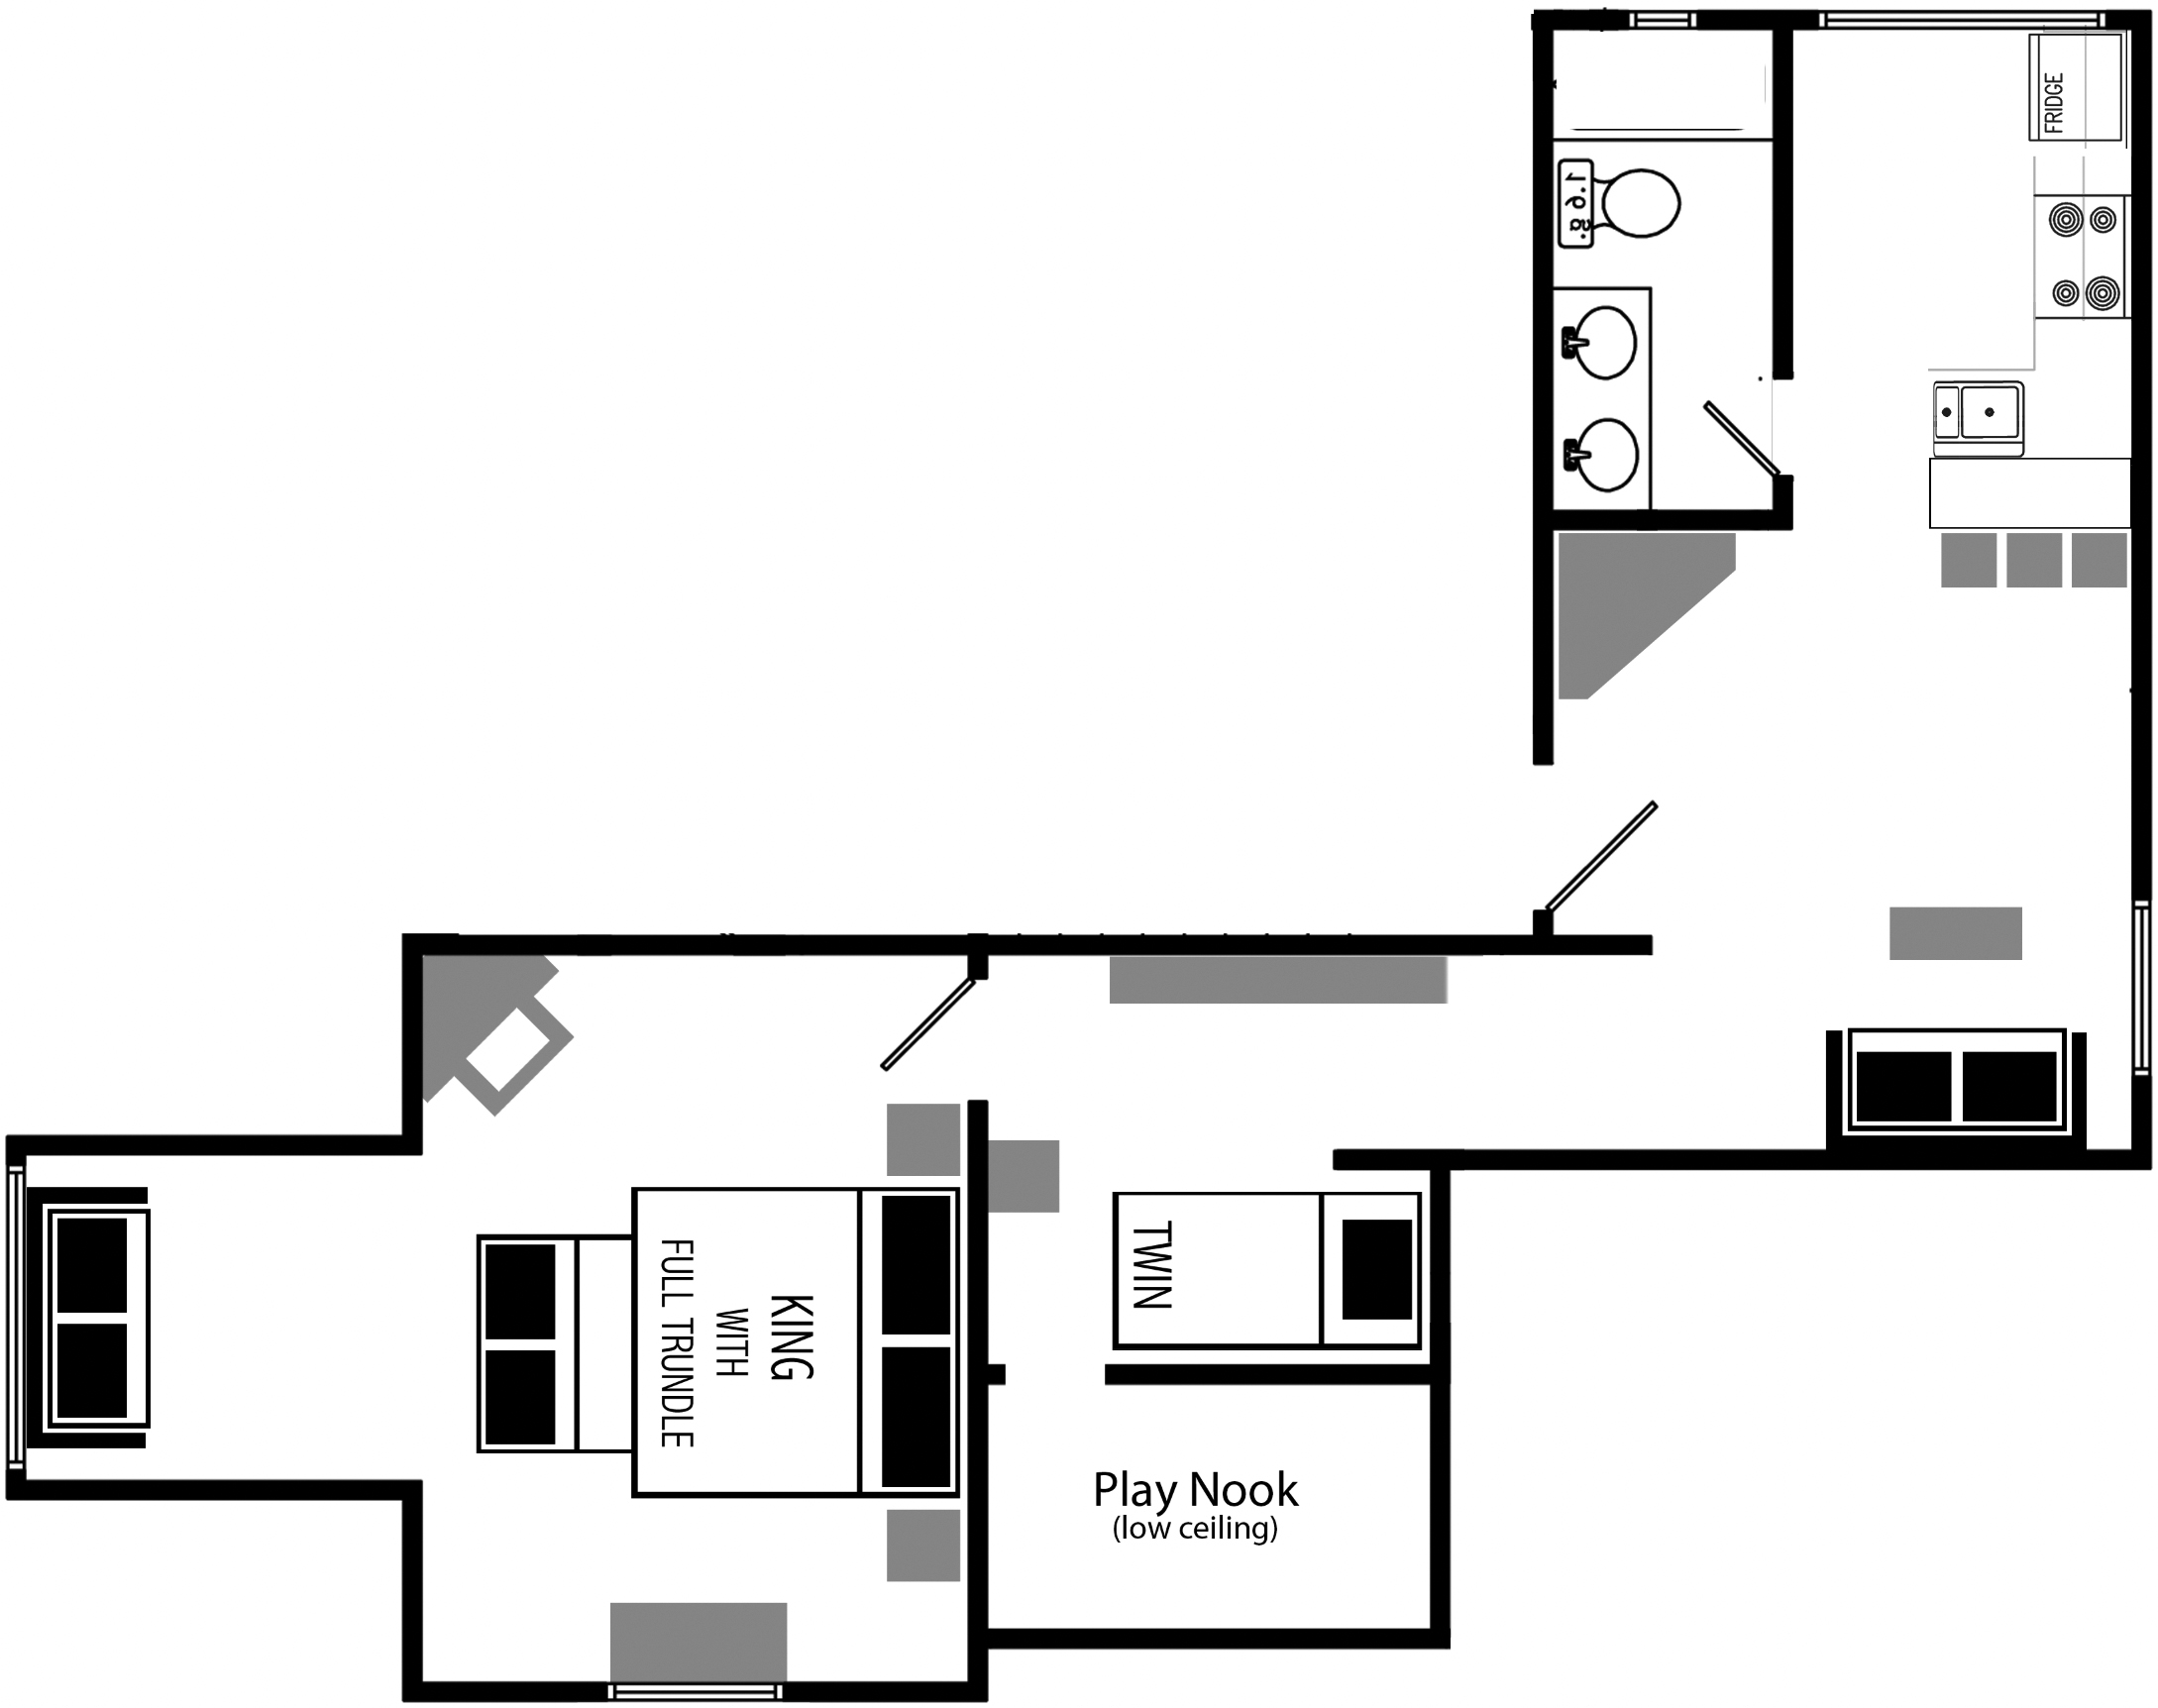 3-bedroom Vacation Rental floor plan